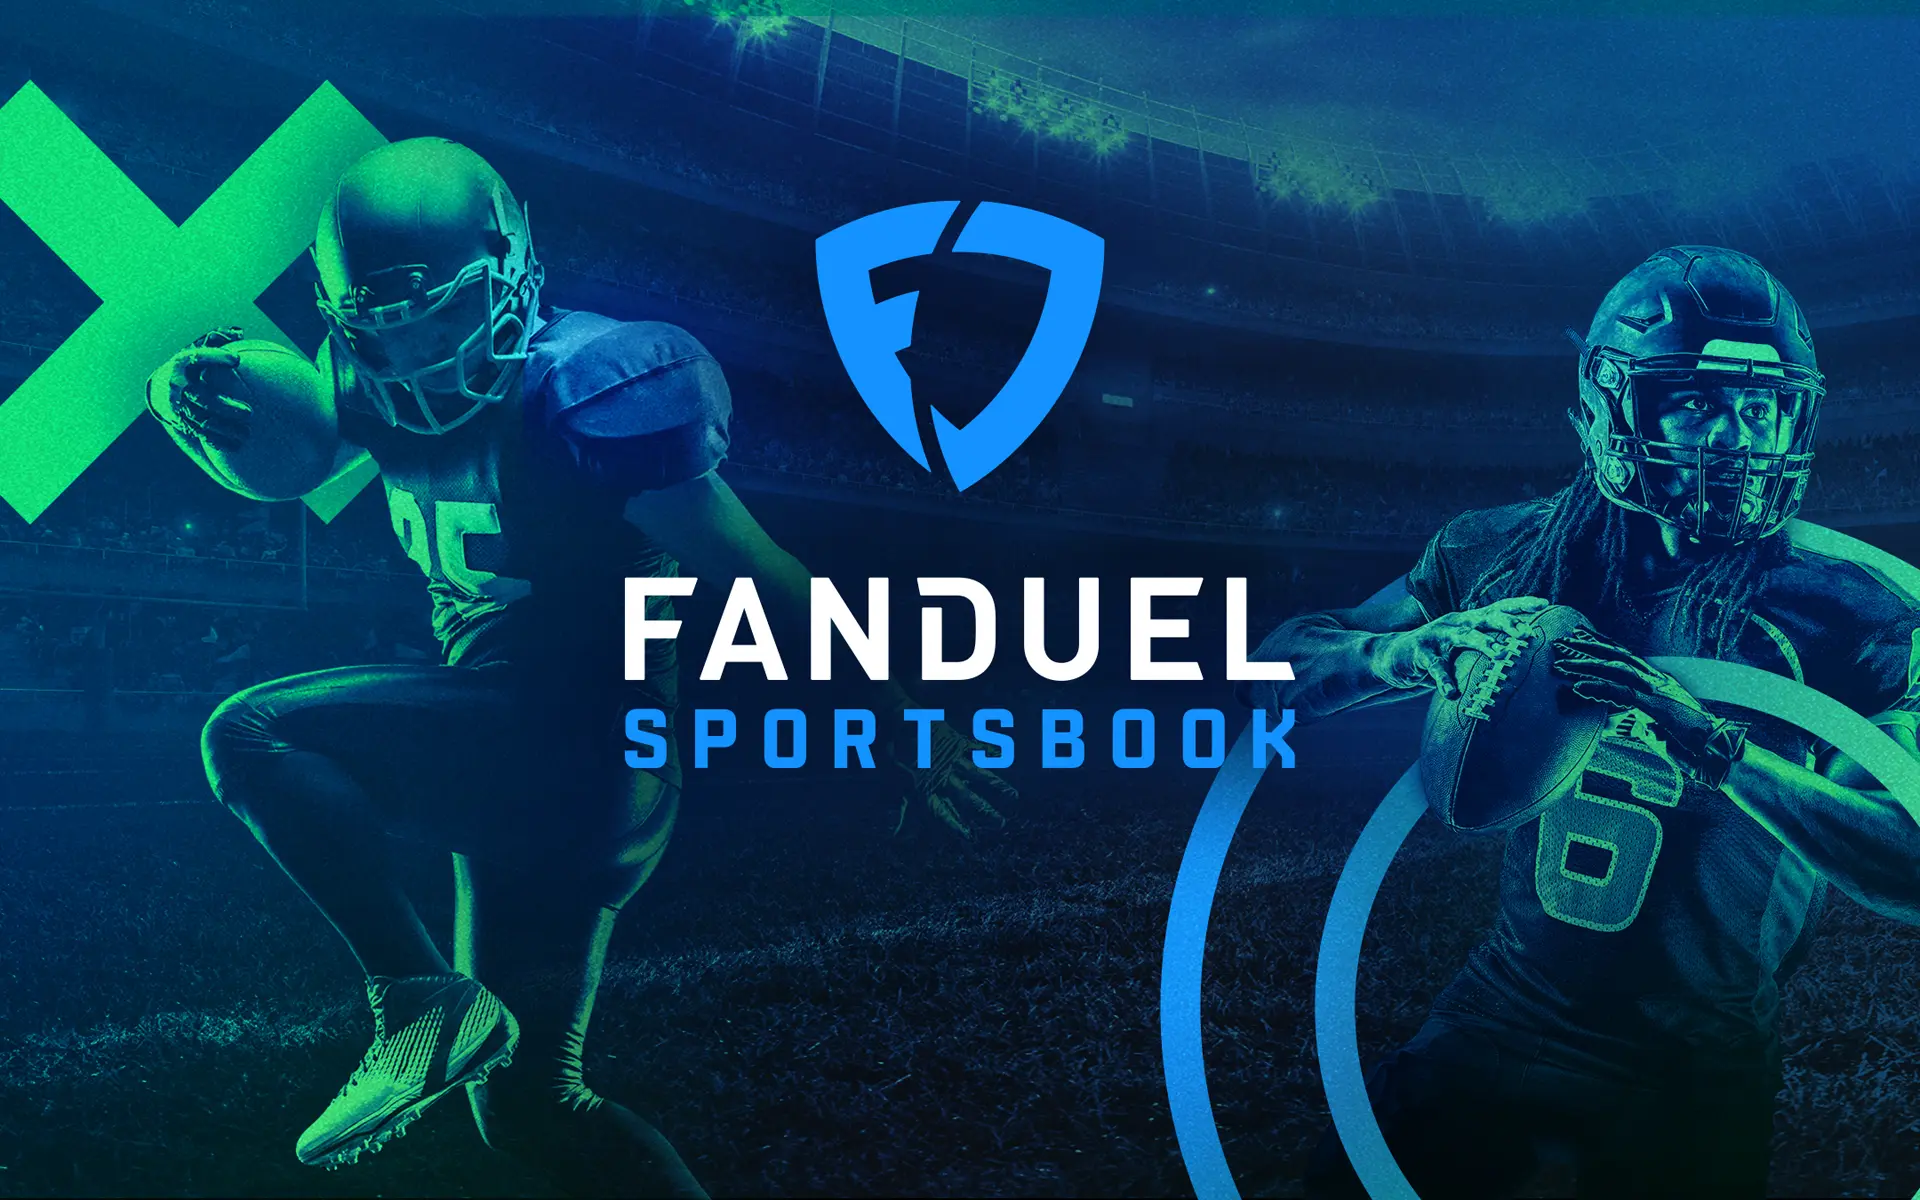 Fanduel sports book